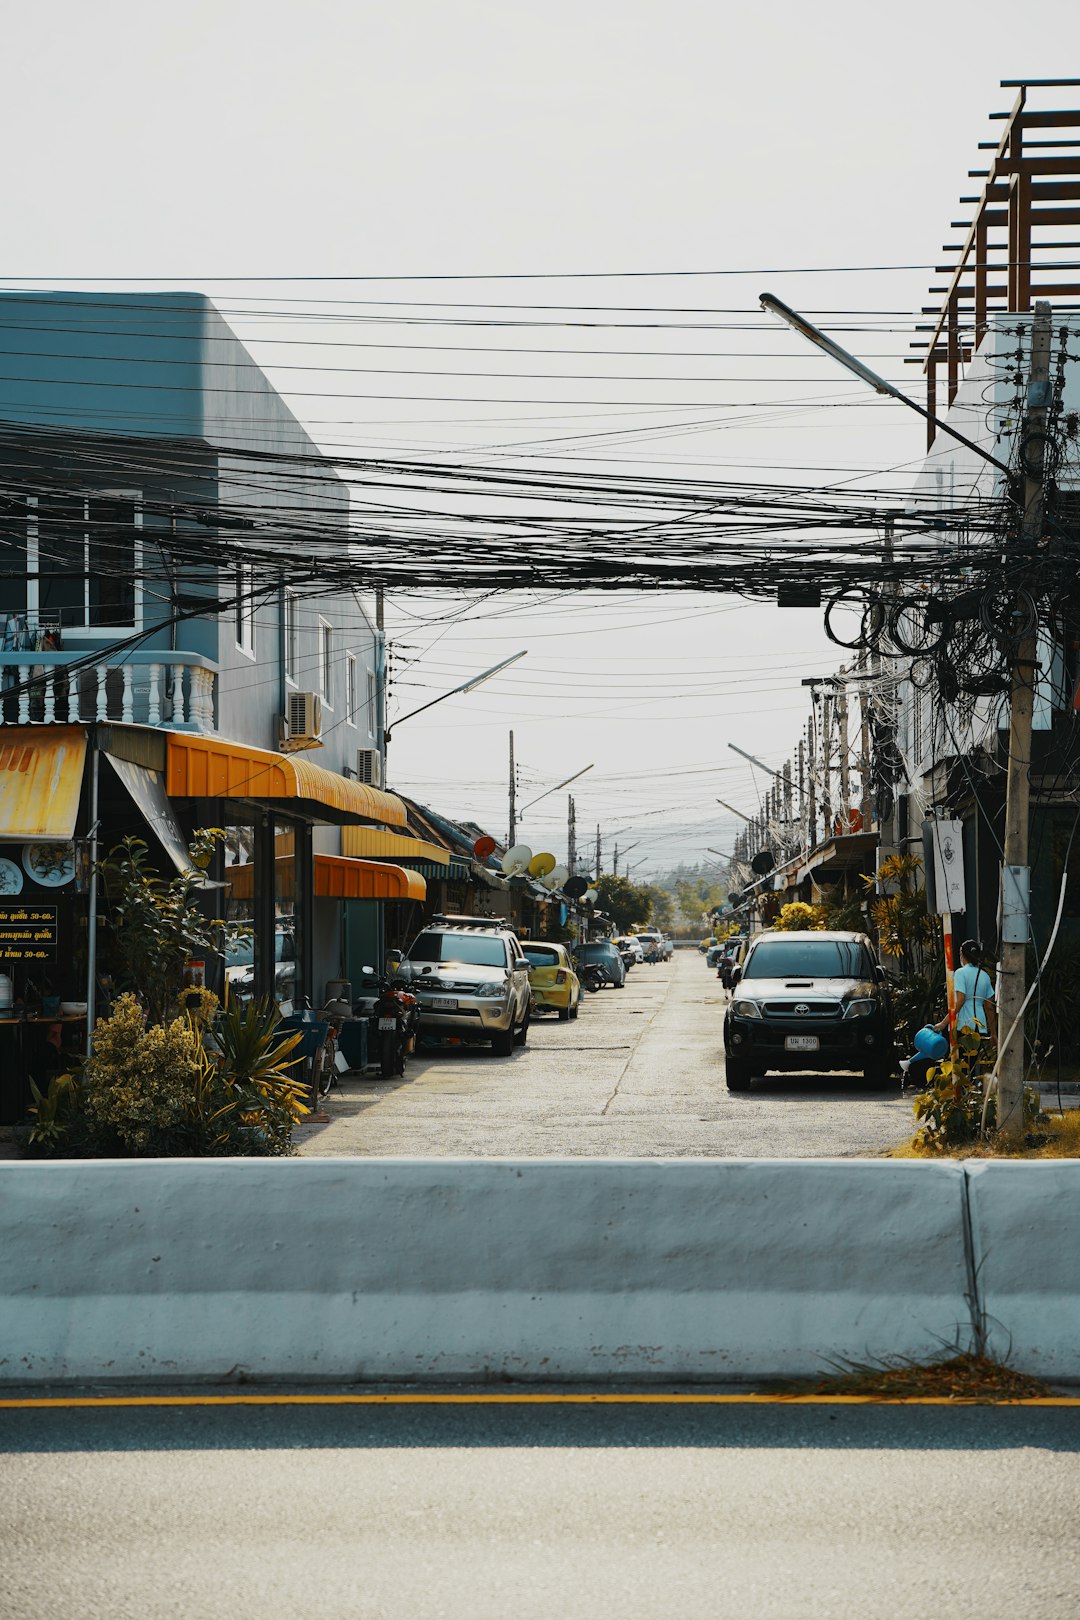 Lane in Thailand